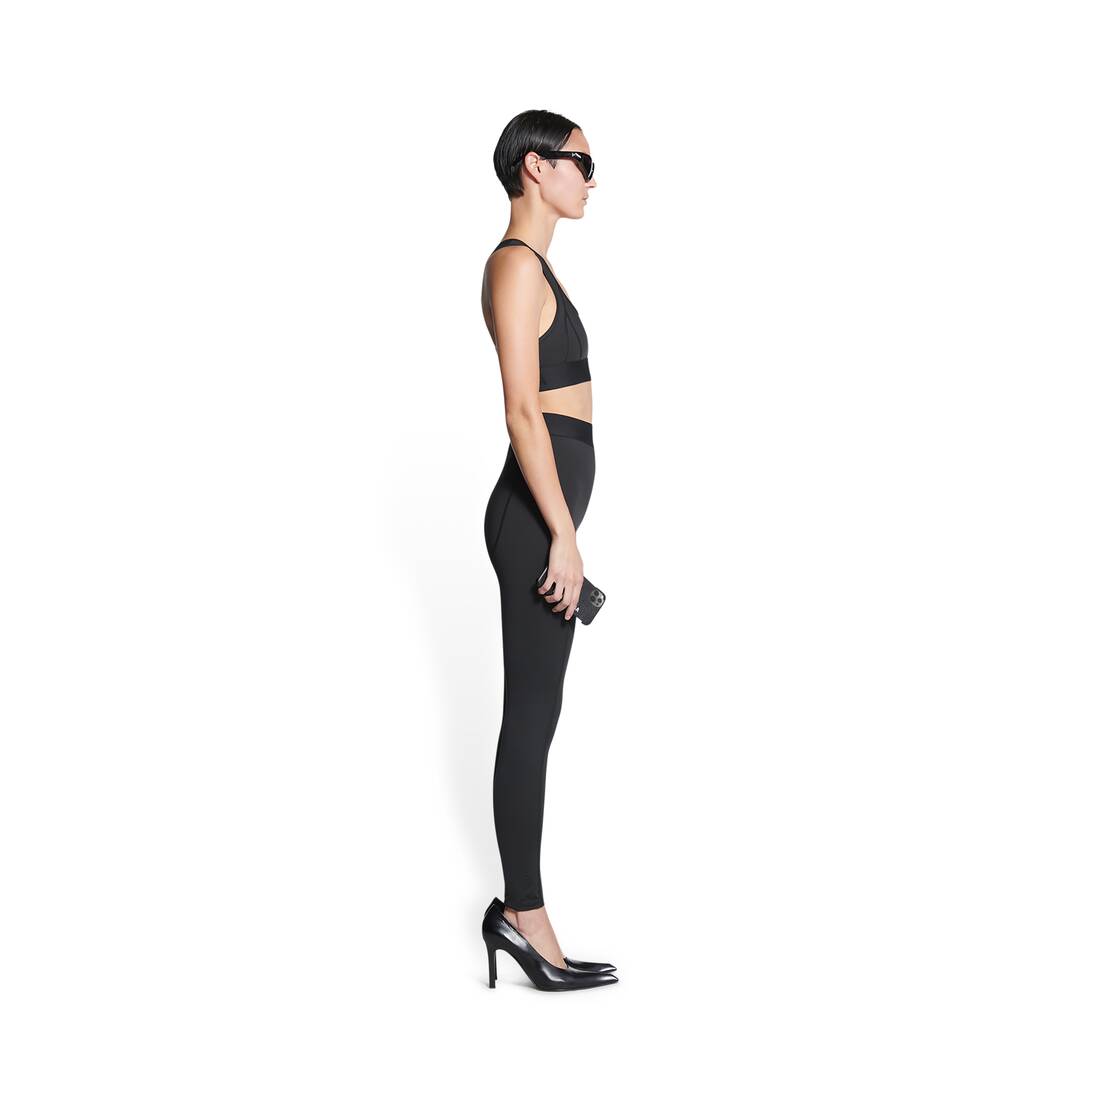 BALENCIAGA NAVY LOGO LEGGING PANTS - SIZE 40 – Rewind Couture